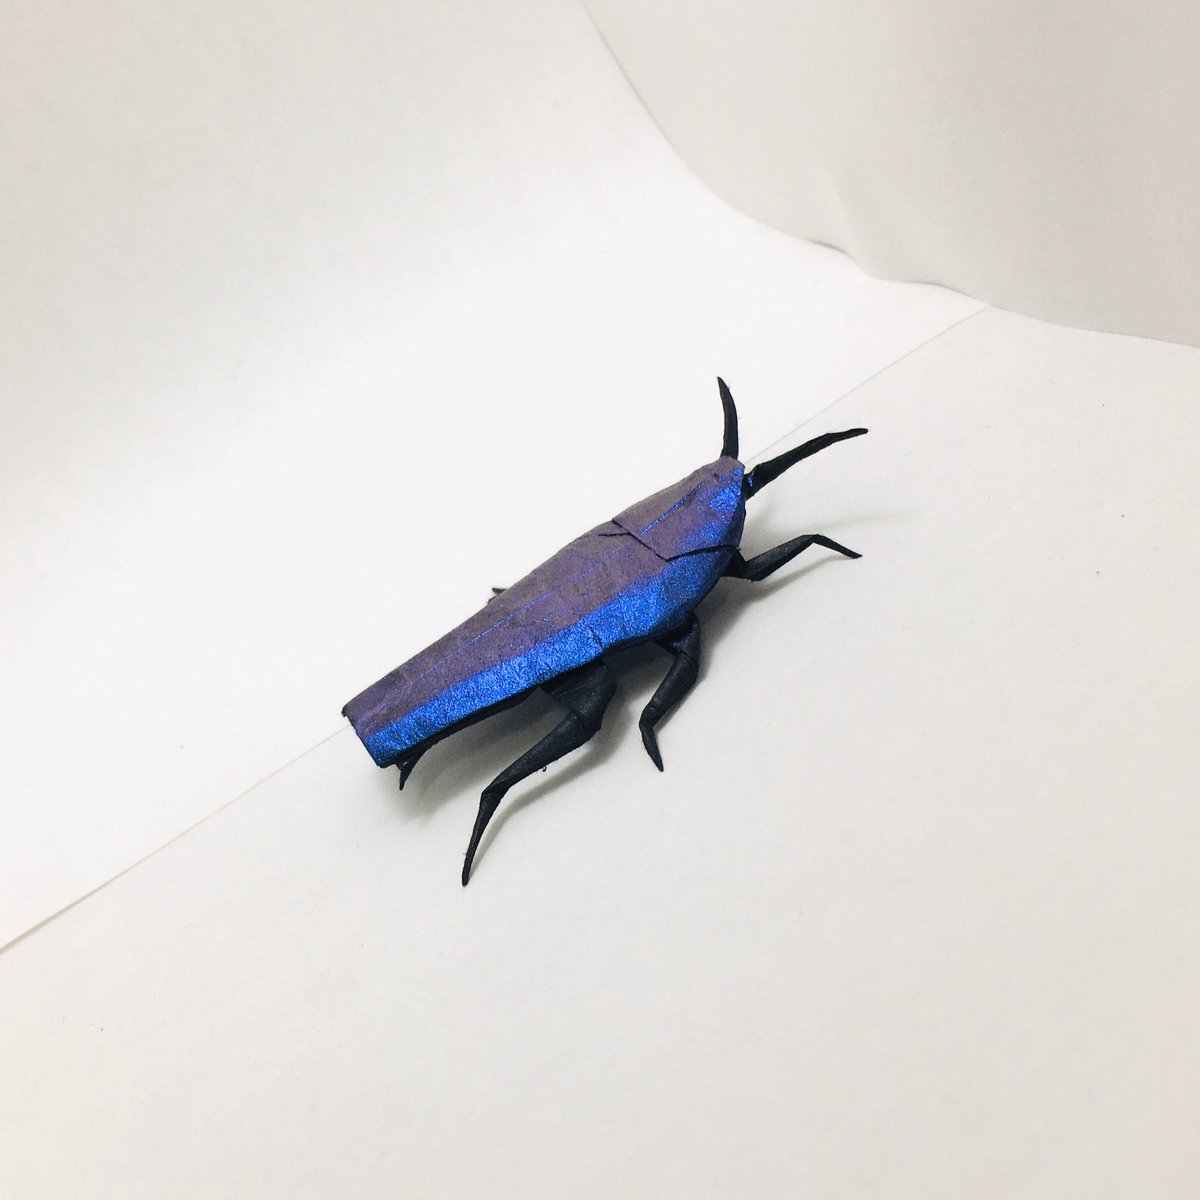 すぎぽよ 勝田恭平さんのゴキブリ Cockroach Designed By Kyohei Katsuta cm雁皮紙 水彩絵の具 完成後塗装 より From One Sheet Of Square Paper ルリゴキブリテイスト 脚とか裏側は何色なのか分からなかったので 黒のままにしときました